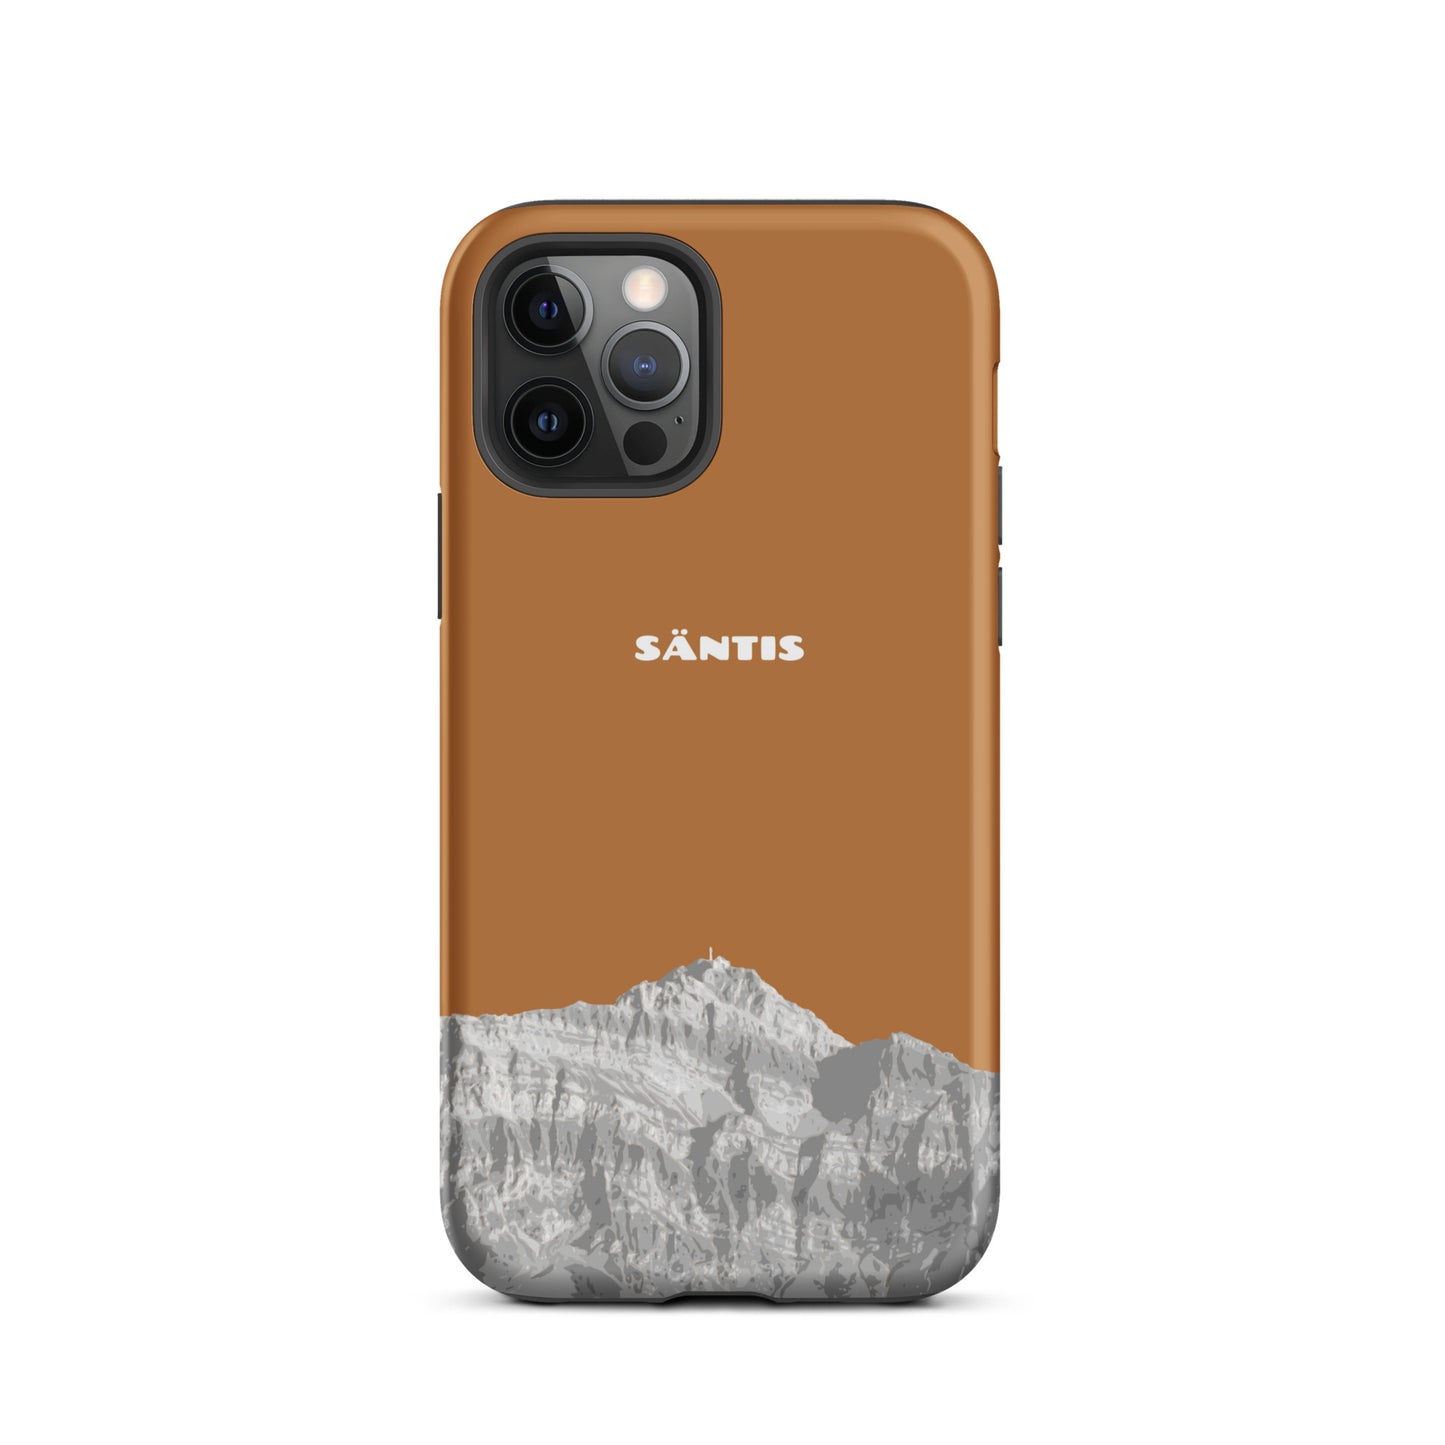 Hülle für das iPhone 12 Pro von Apple in der Farbe Kupfer, dass den Säntis im Alpstein zeigt.